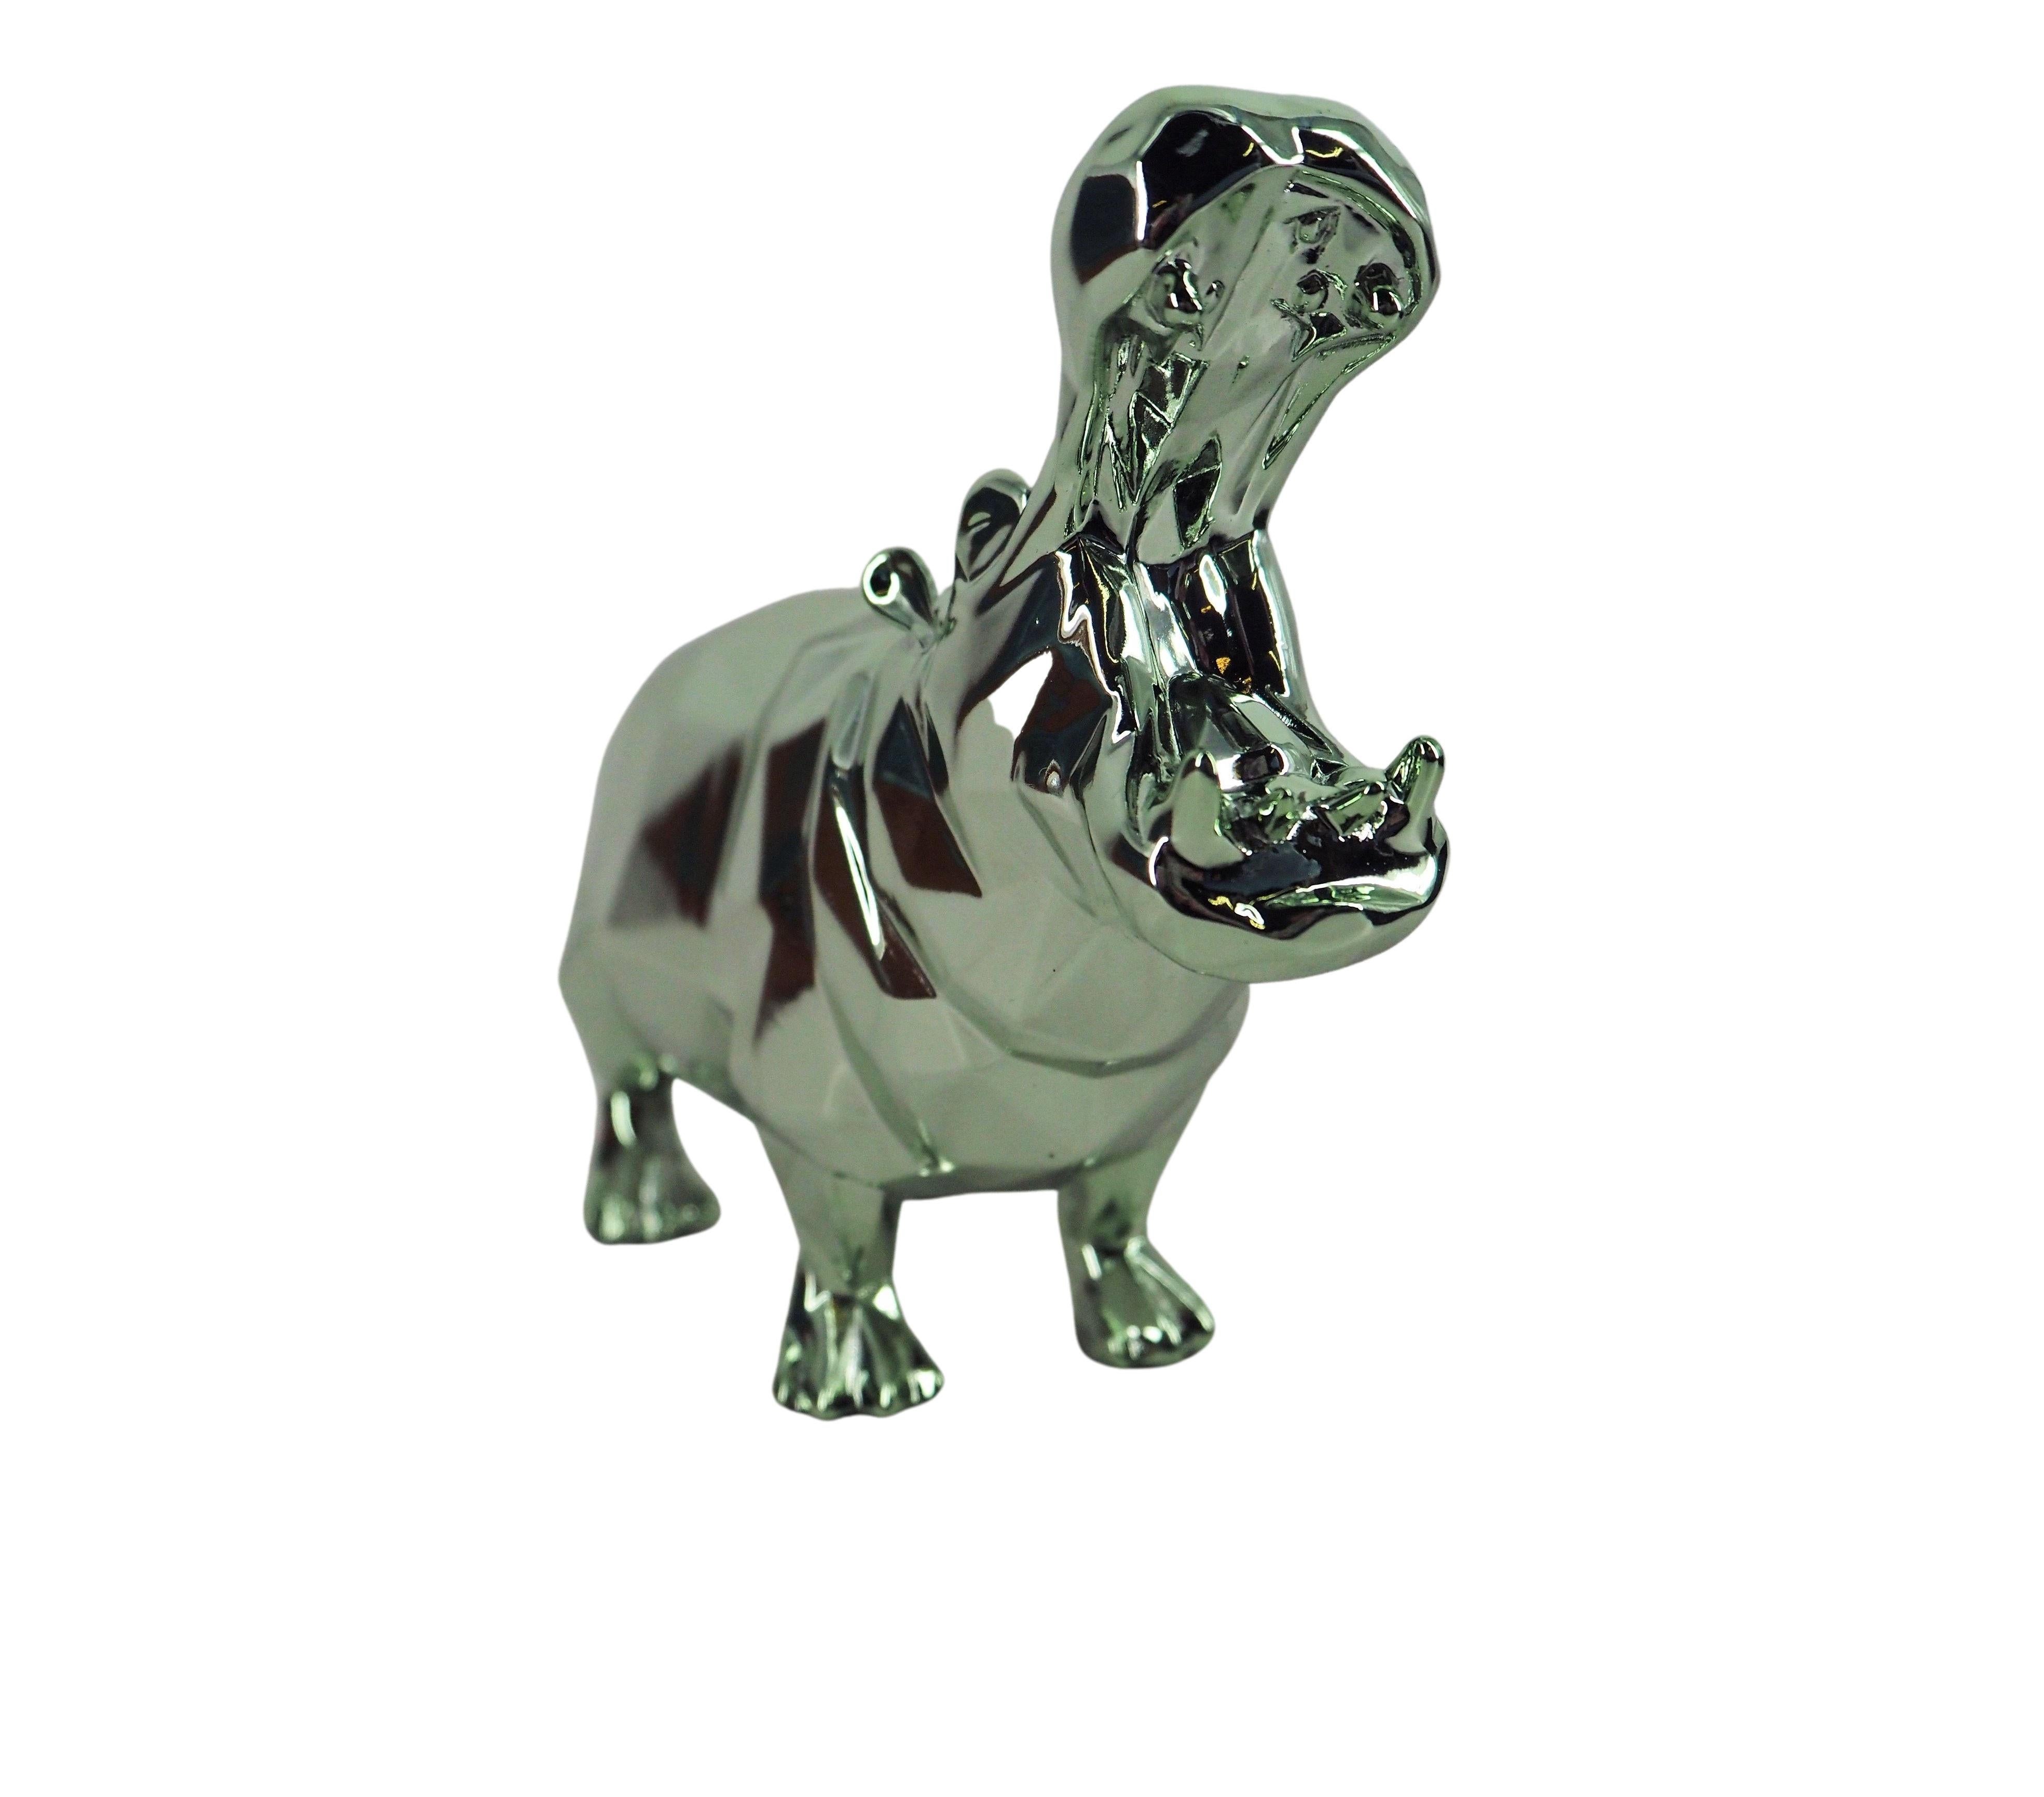 Hippo Spirit (édition verteau) - Sculpture dans sa boîte d'origine avec manteau d'artiste